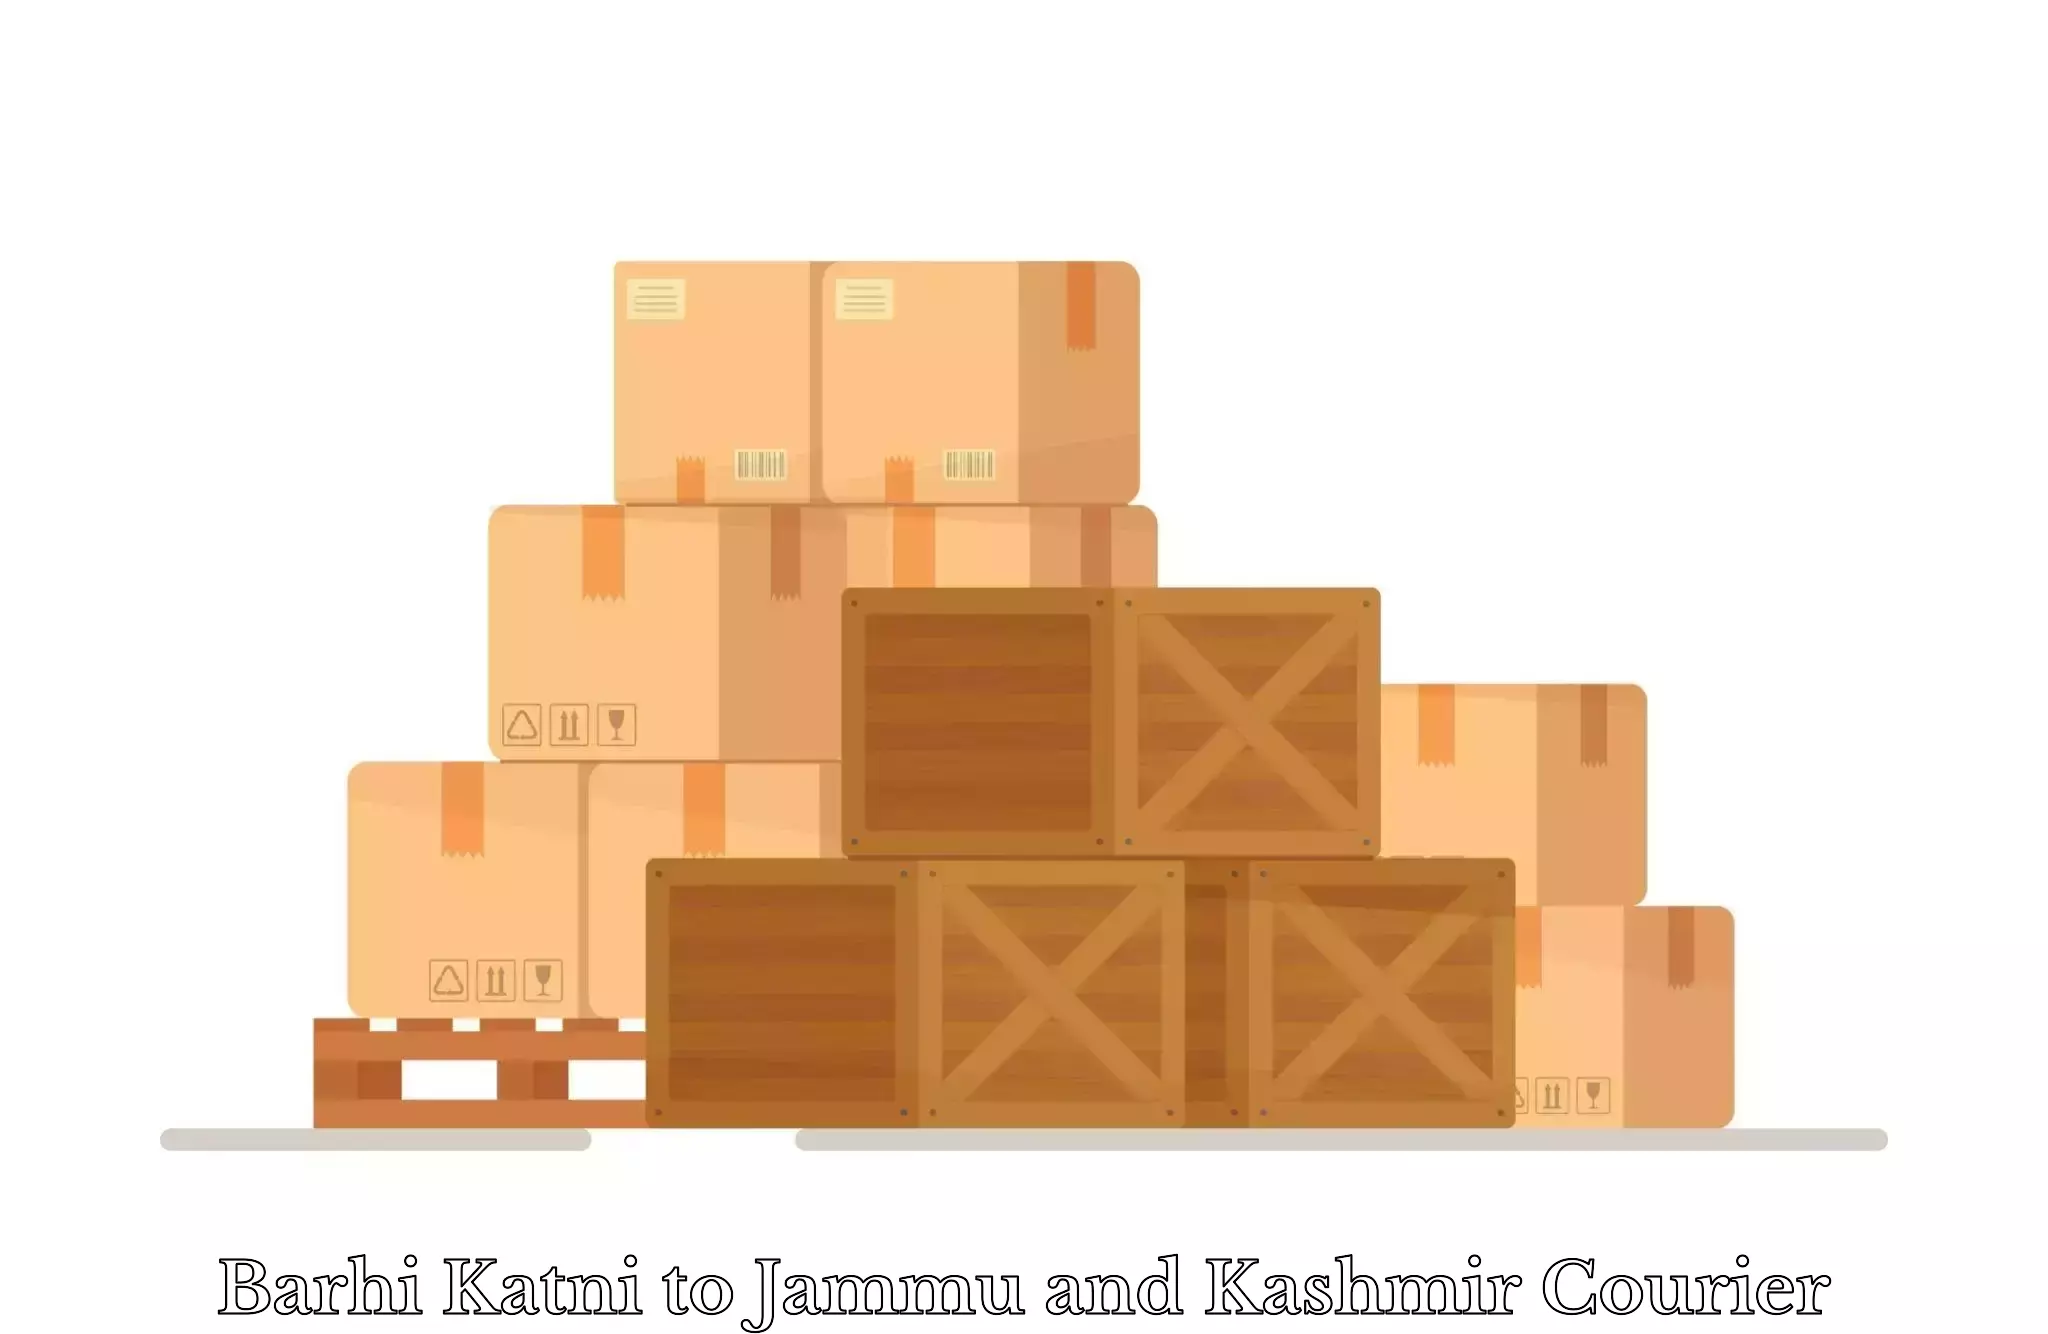 Luggage shipment tracking Barhi Katni to University of Jammu